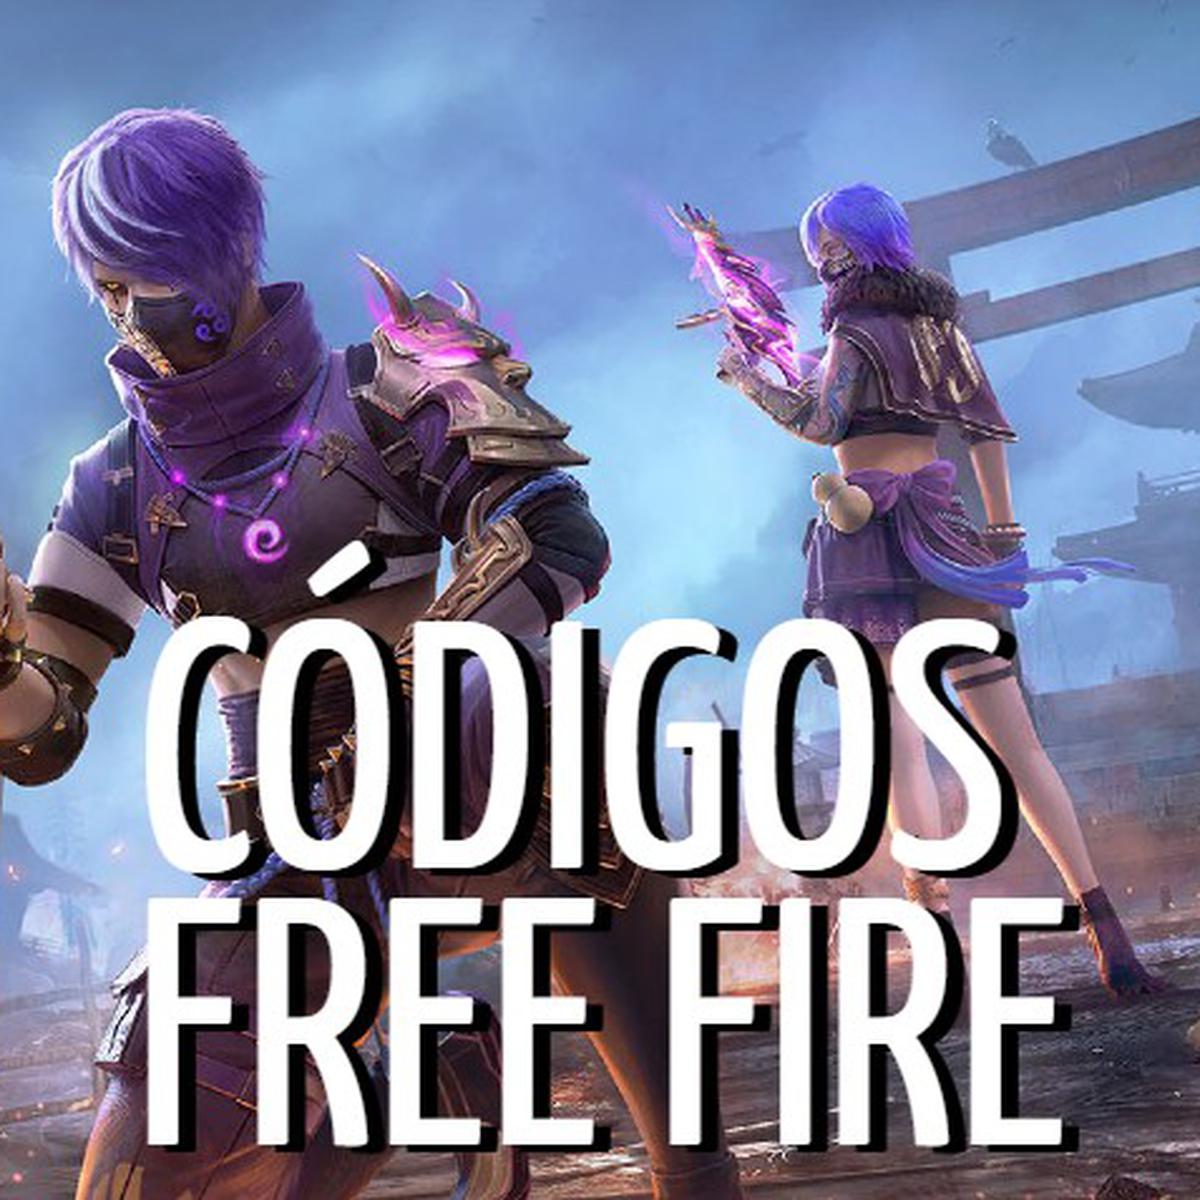 Códigos gratis de Garena Free Fire para hoy, 28 de febrero de 2022